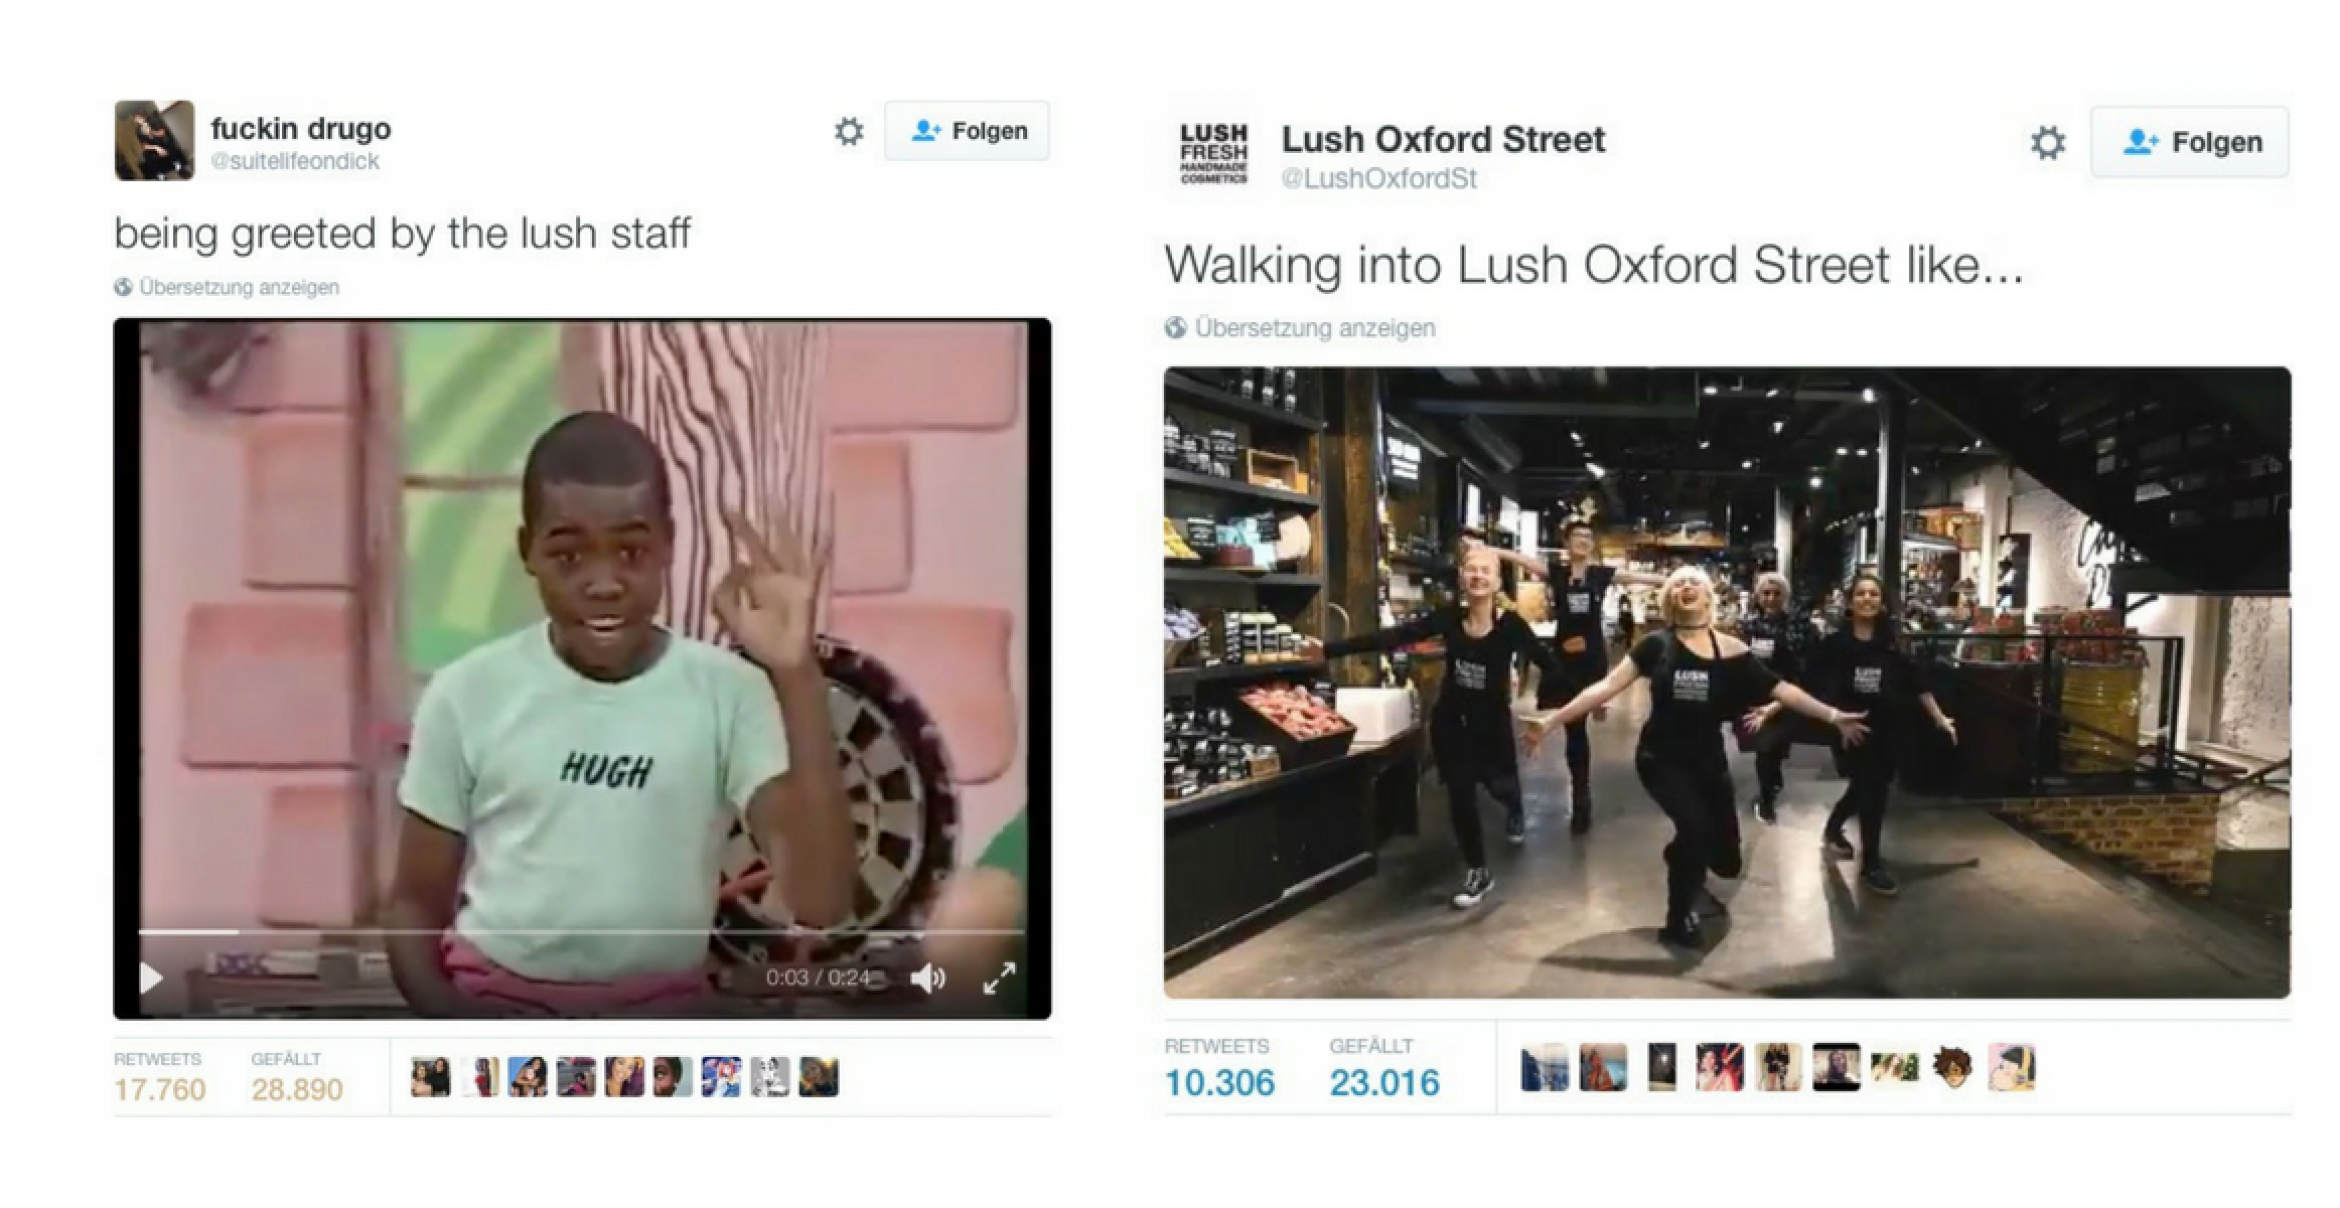 Alles gewonnen: So cheffig reagiert die Kosmetikmarke Lush auf die Kritik eines Twitter-Users